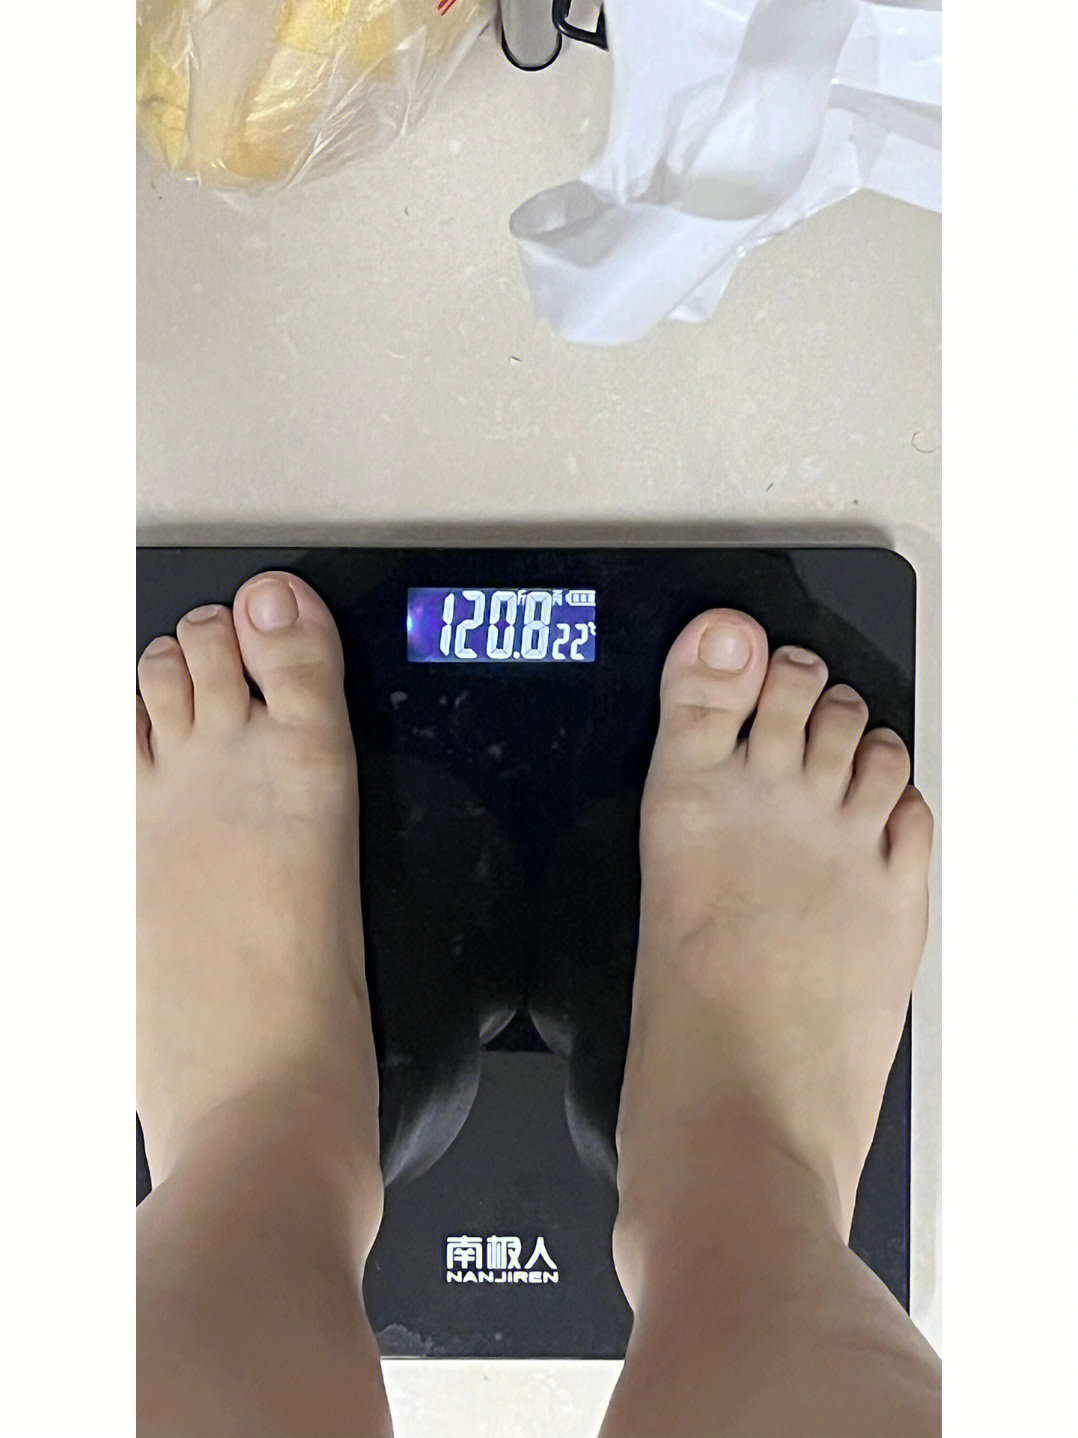 150斤大基数减肥第89天初始体重:1497今日体重:1208减重:0